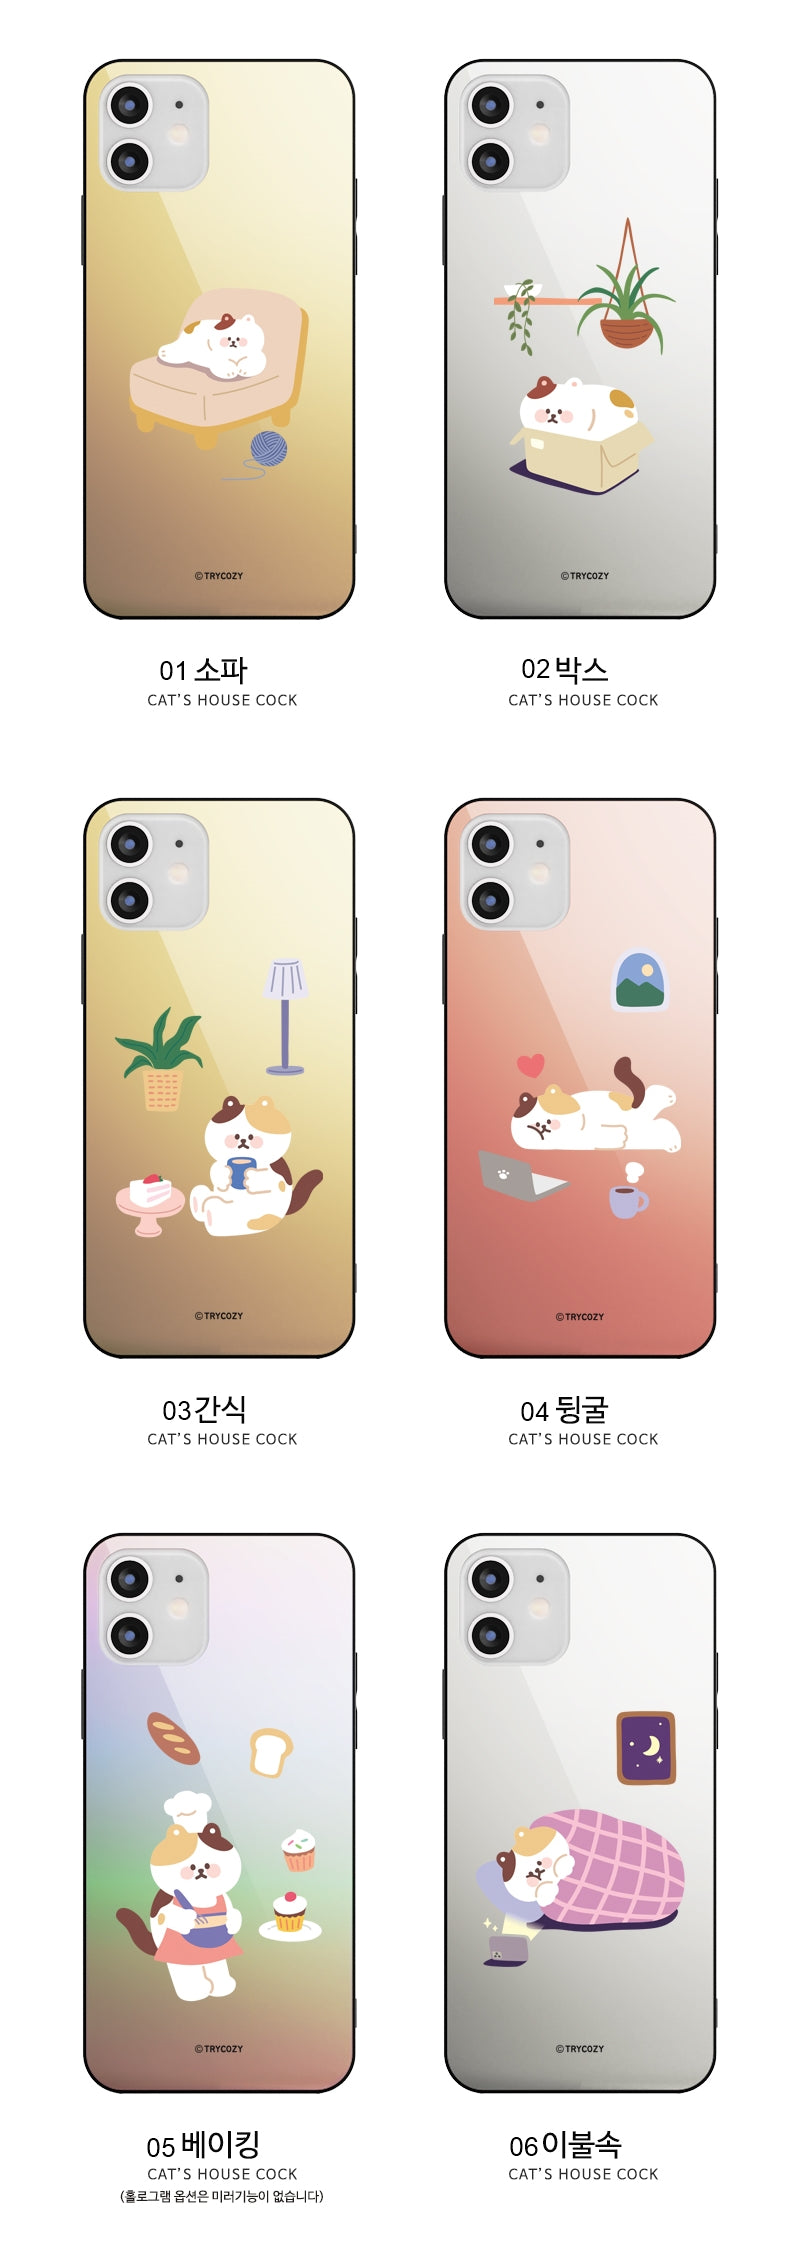 韓國直送 | M55 貓宅 - 鏡面手機殼 iPhone / Samsung Galaxy